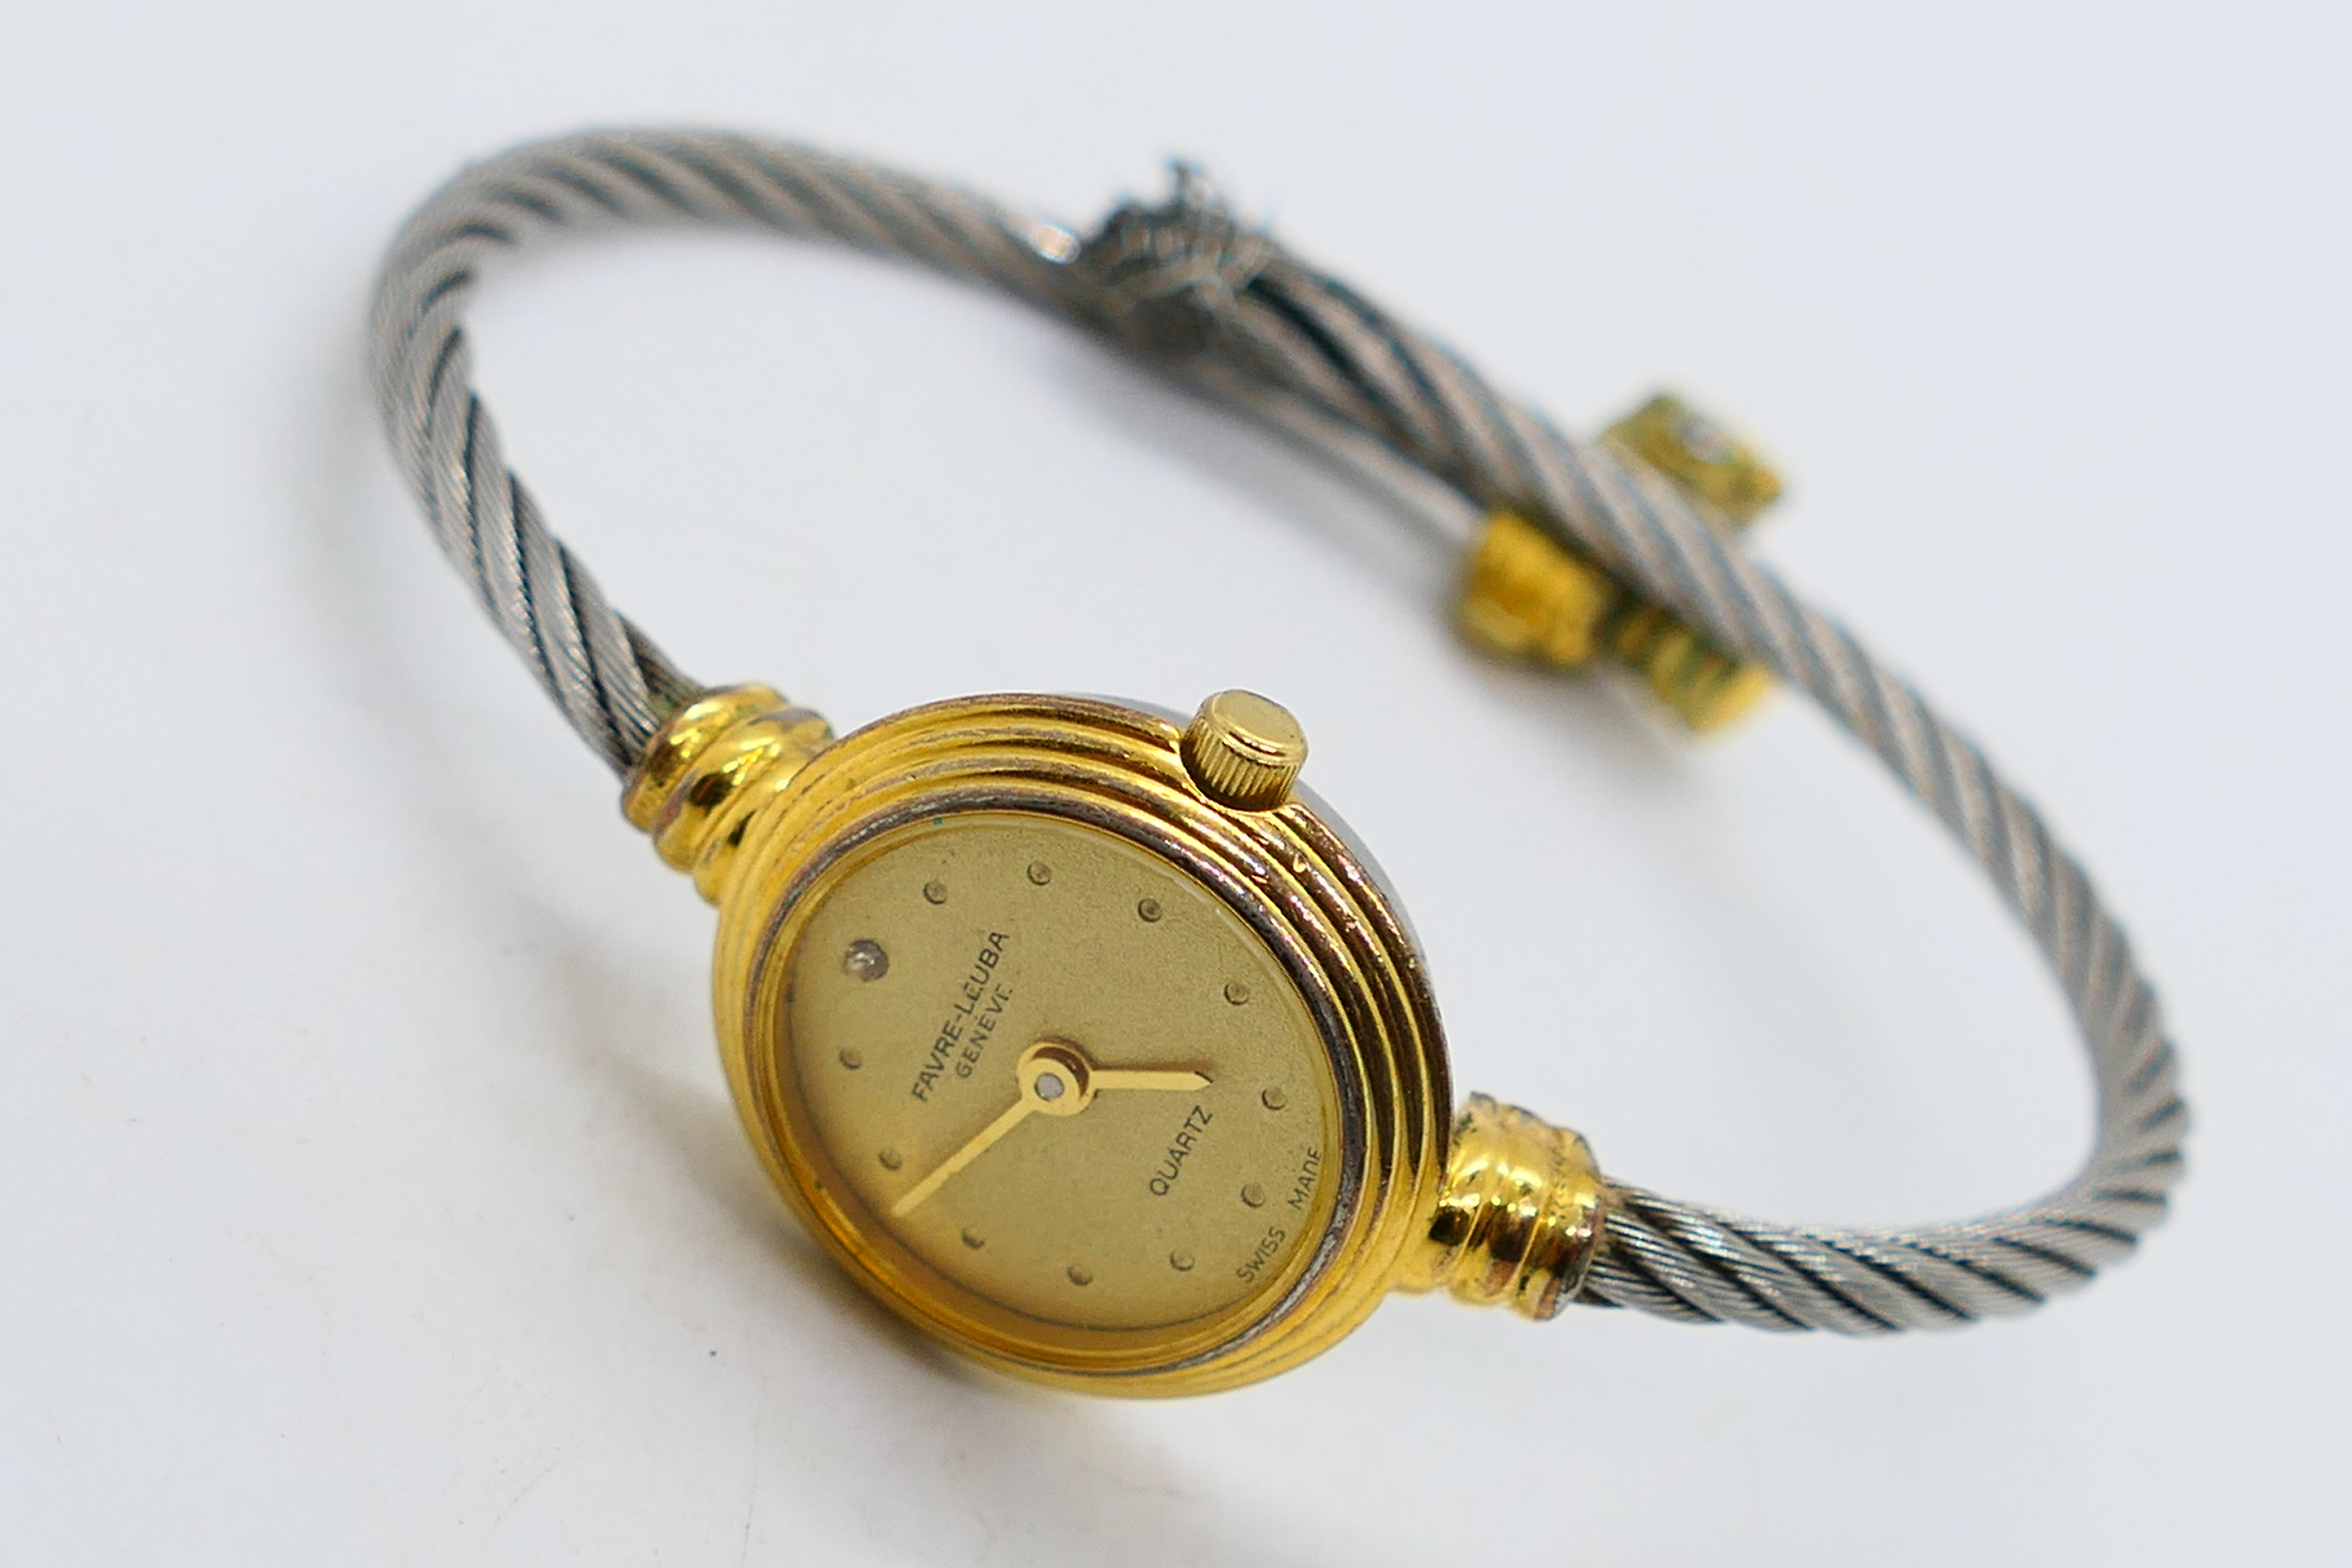 A lady's wrist watch by Favre-Leuba, Swi